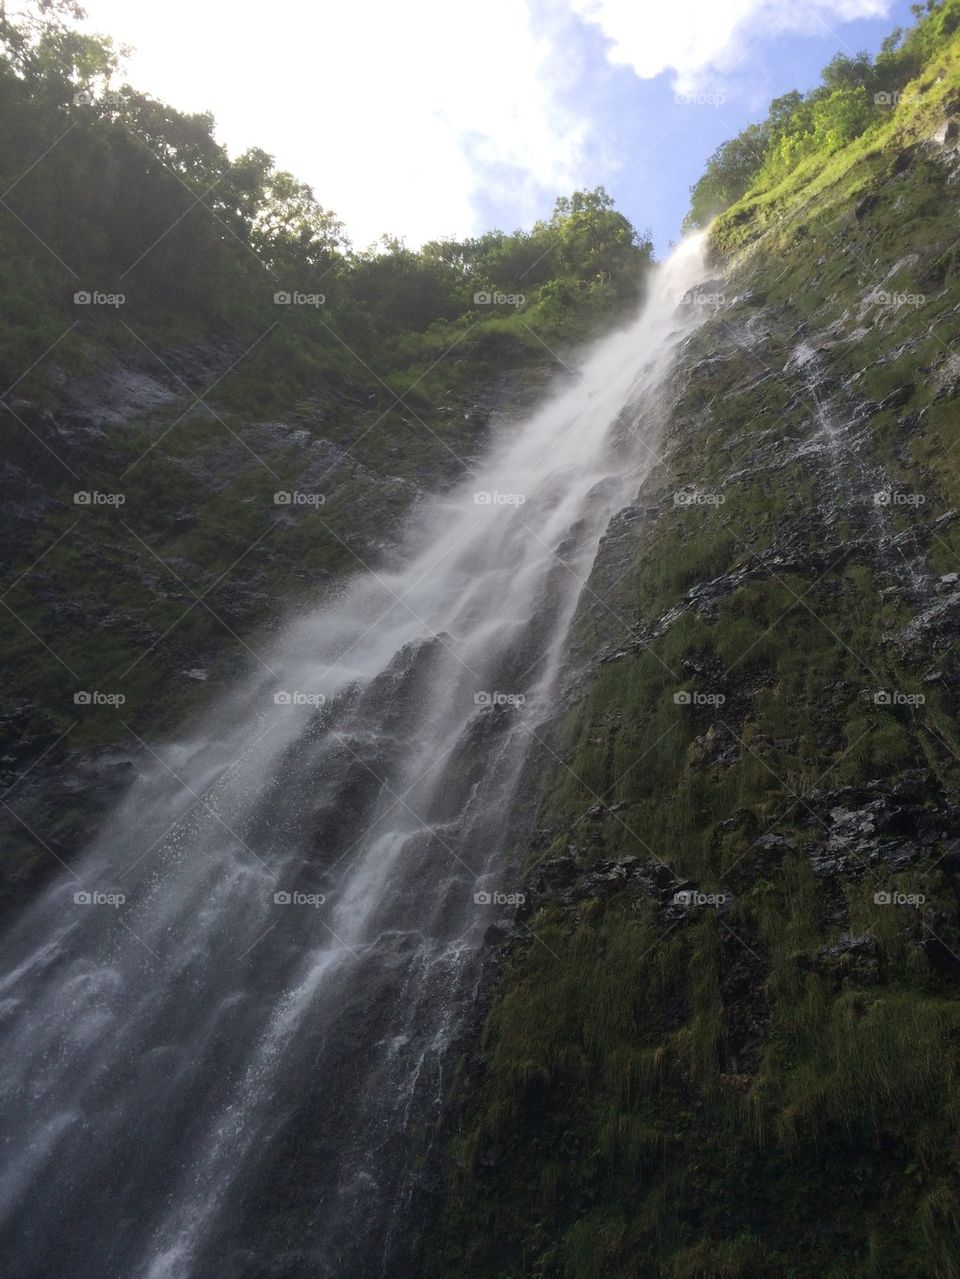 Waterfalls of Maui Hawaii in Hana